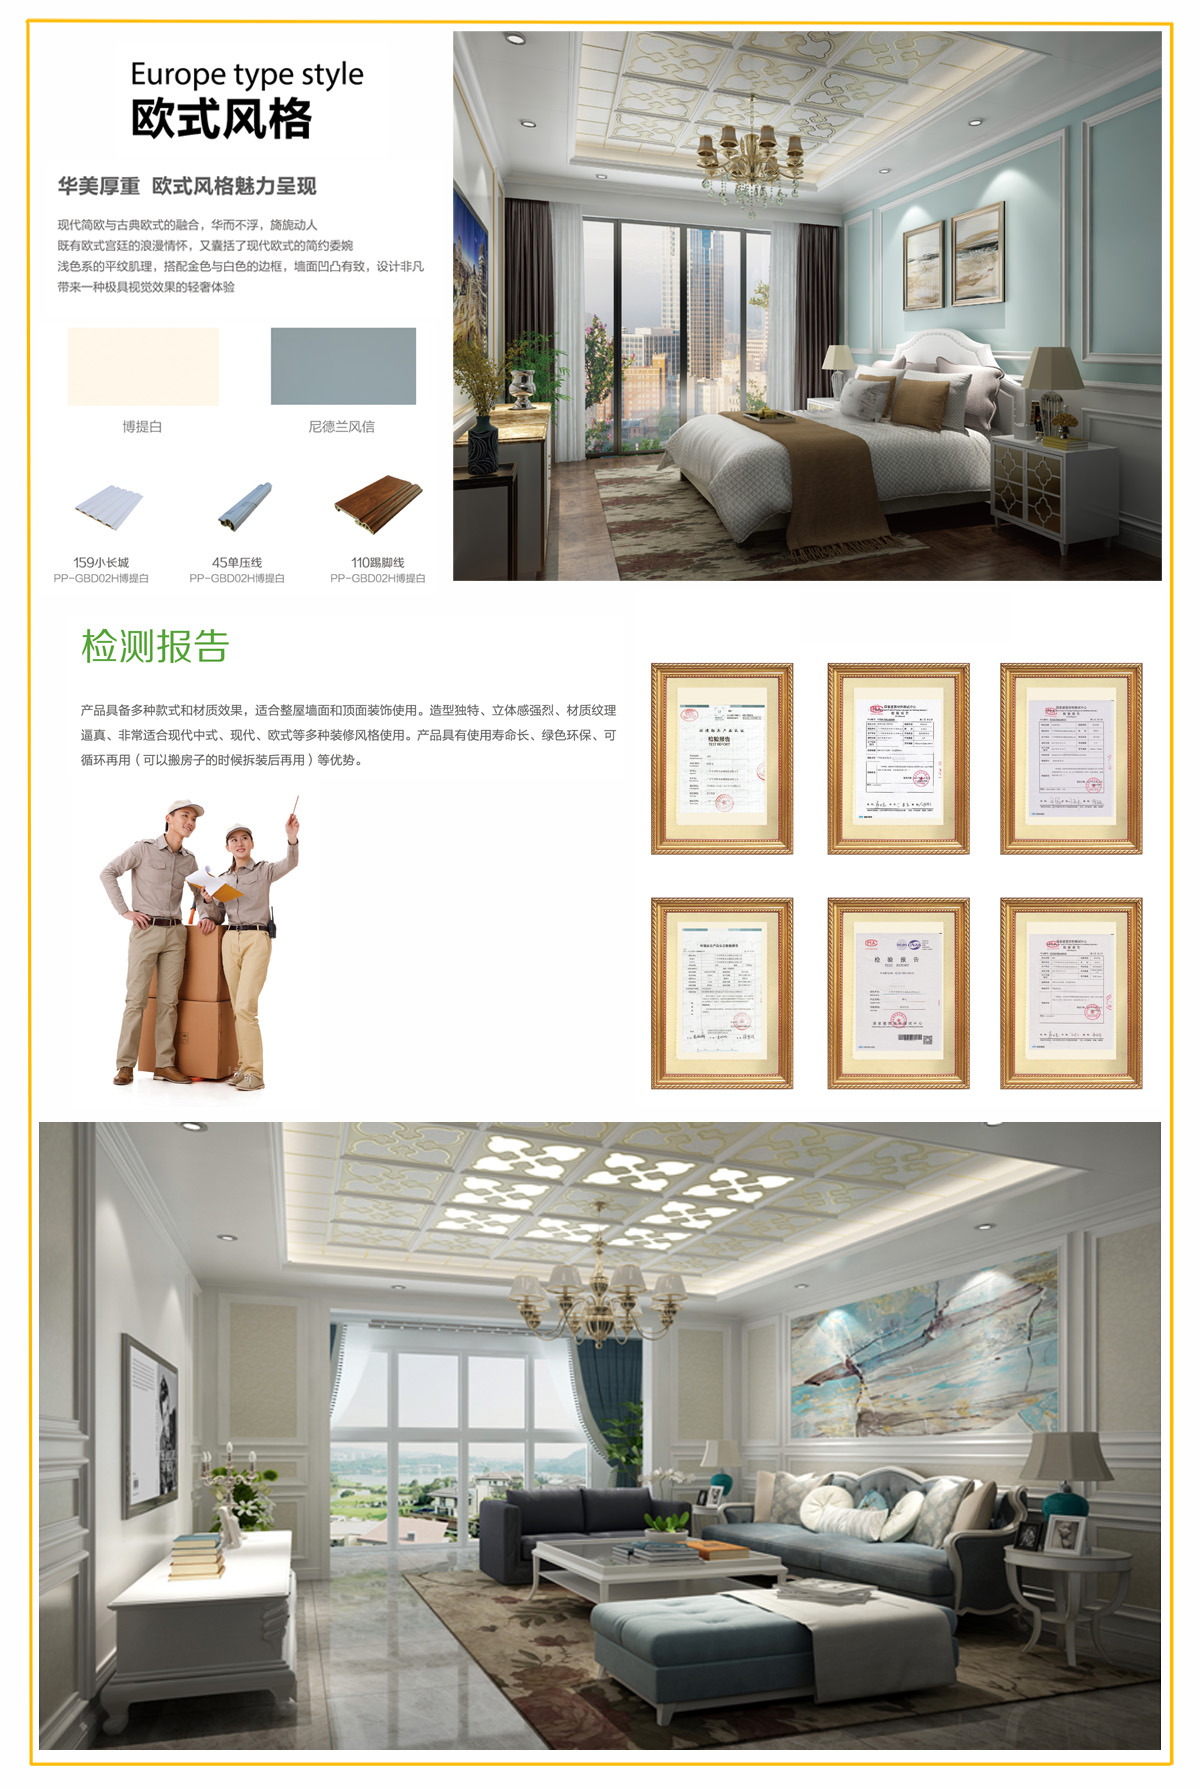 光合木墙板系列展示空间客厅